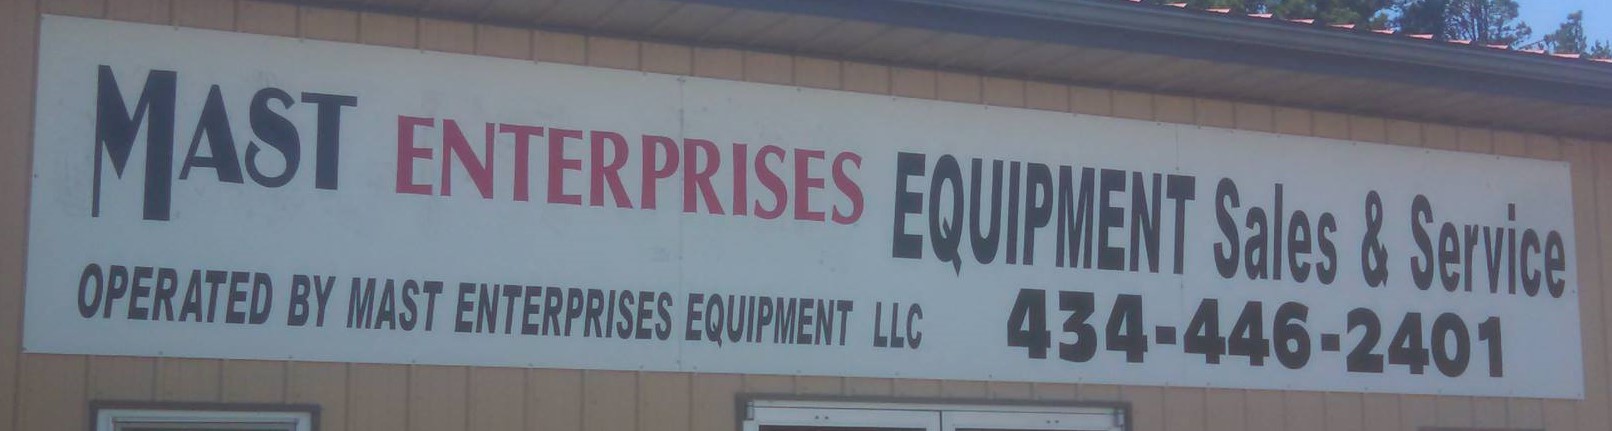 Mast Enterprises Equipment